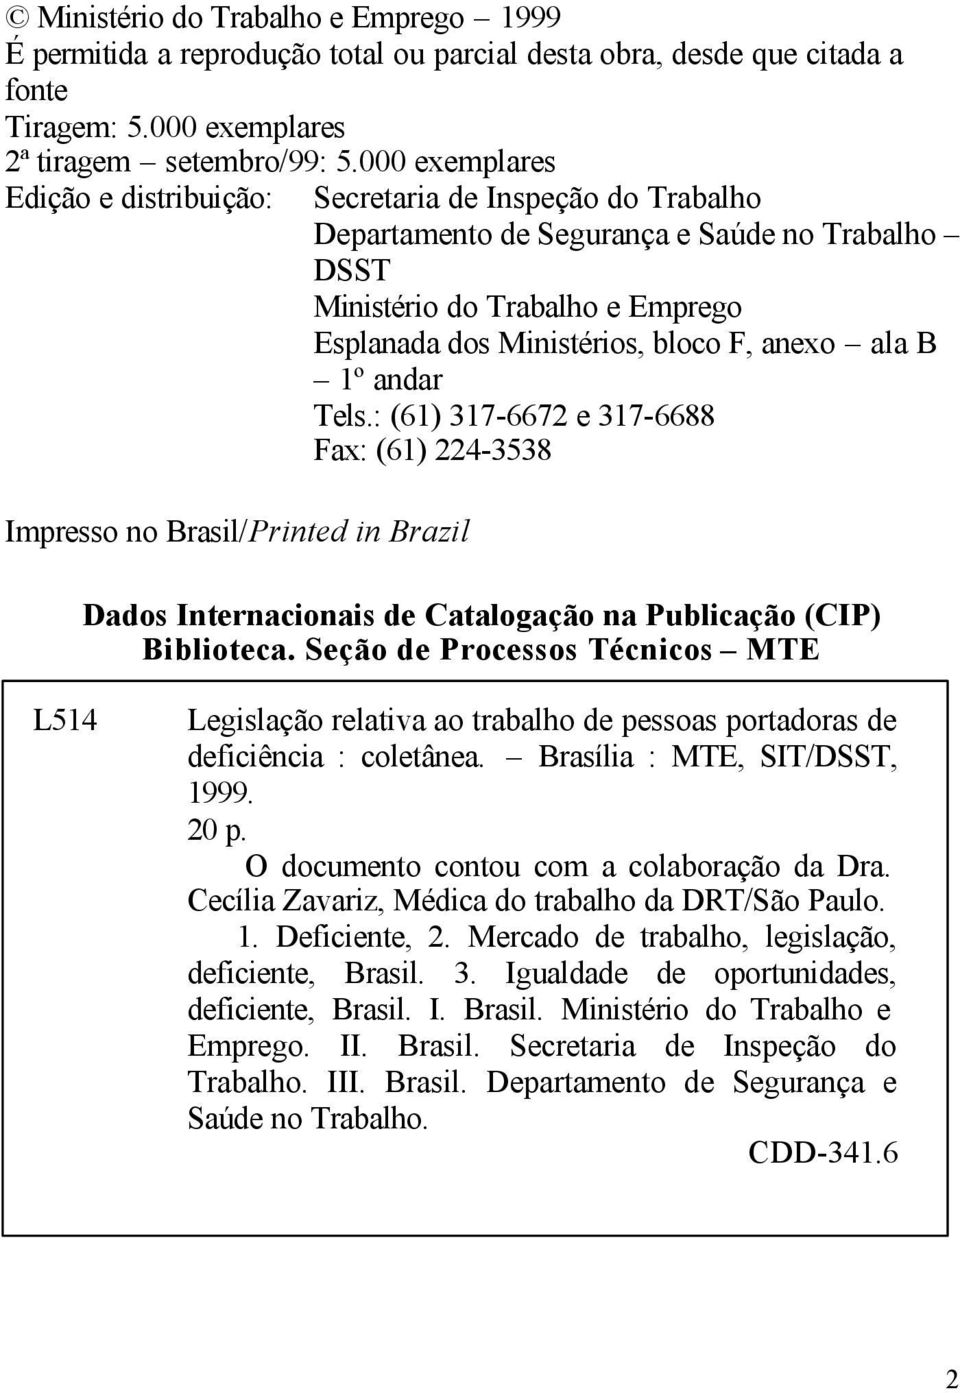 ala B 1º andar Tels.: (61) 317-6672 e 317-6688 Fax: (61) 224-3538 Impresso no Brasil/Printed in Brazil Dados Internacionais de Catalogação na Publicação (CIP) Biblioteca.